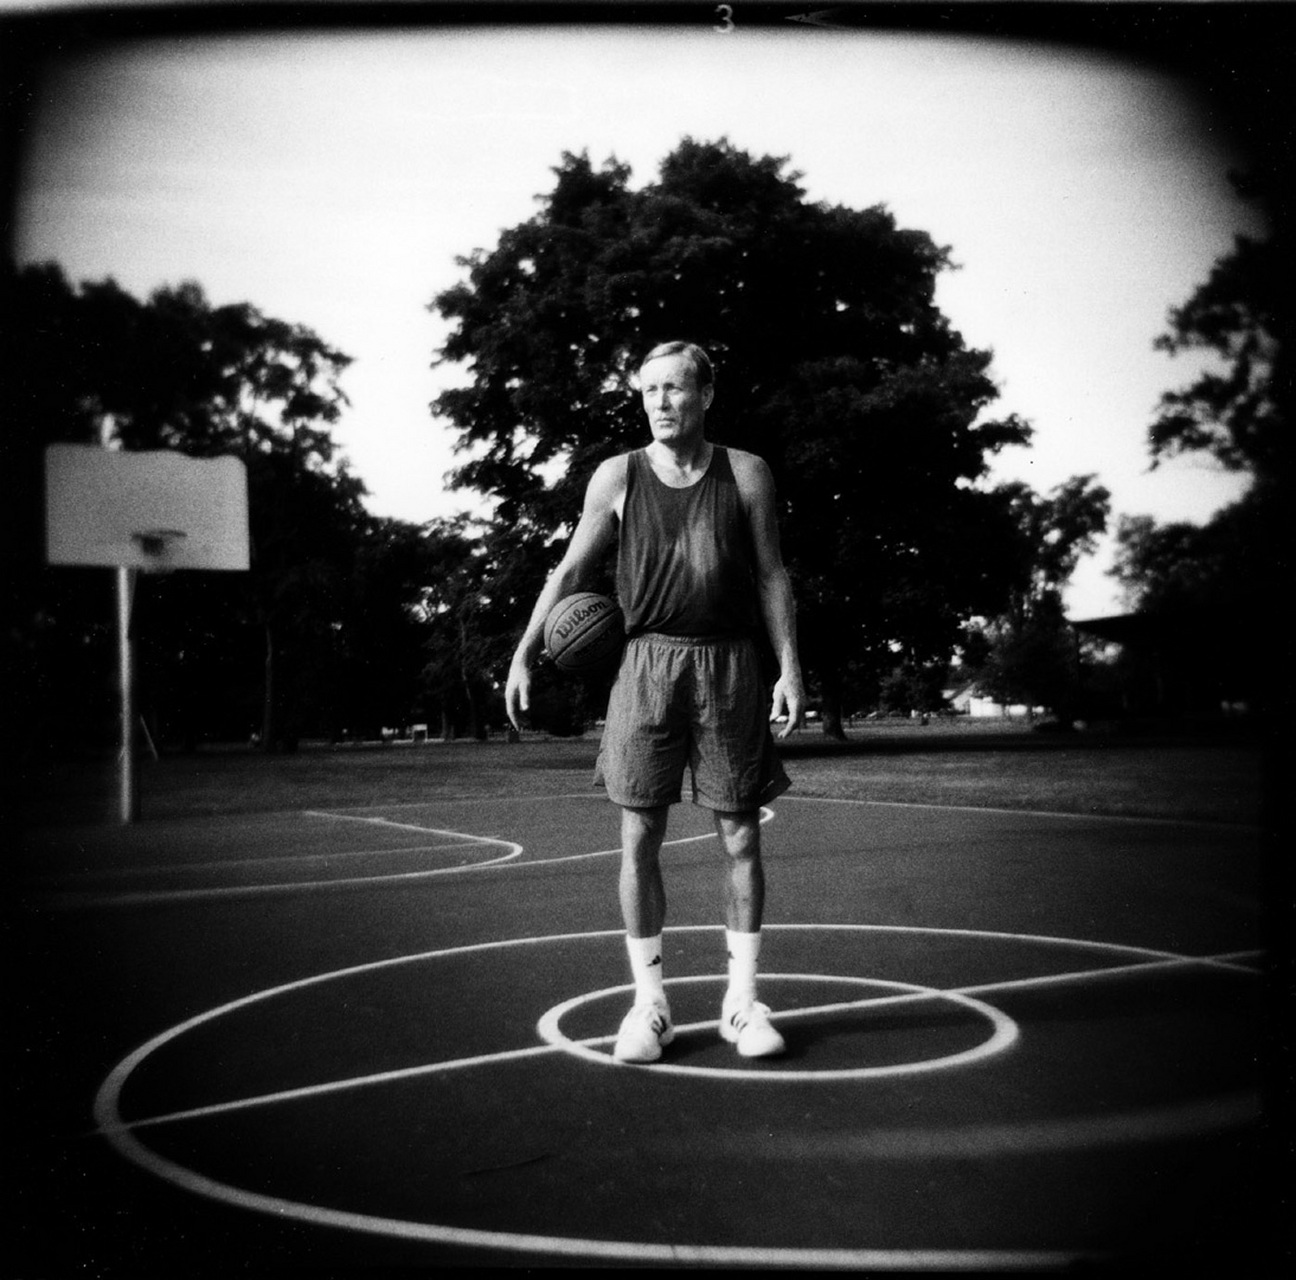 Rick Mount all American basketballer : Holga Eye : David Burnett | Photographer